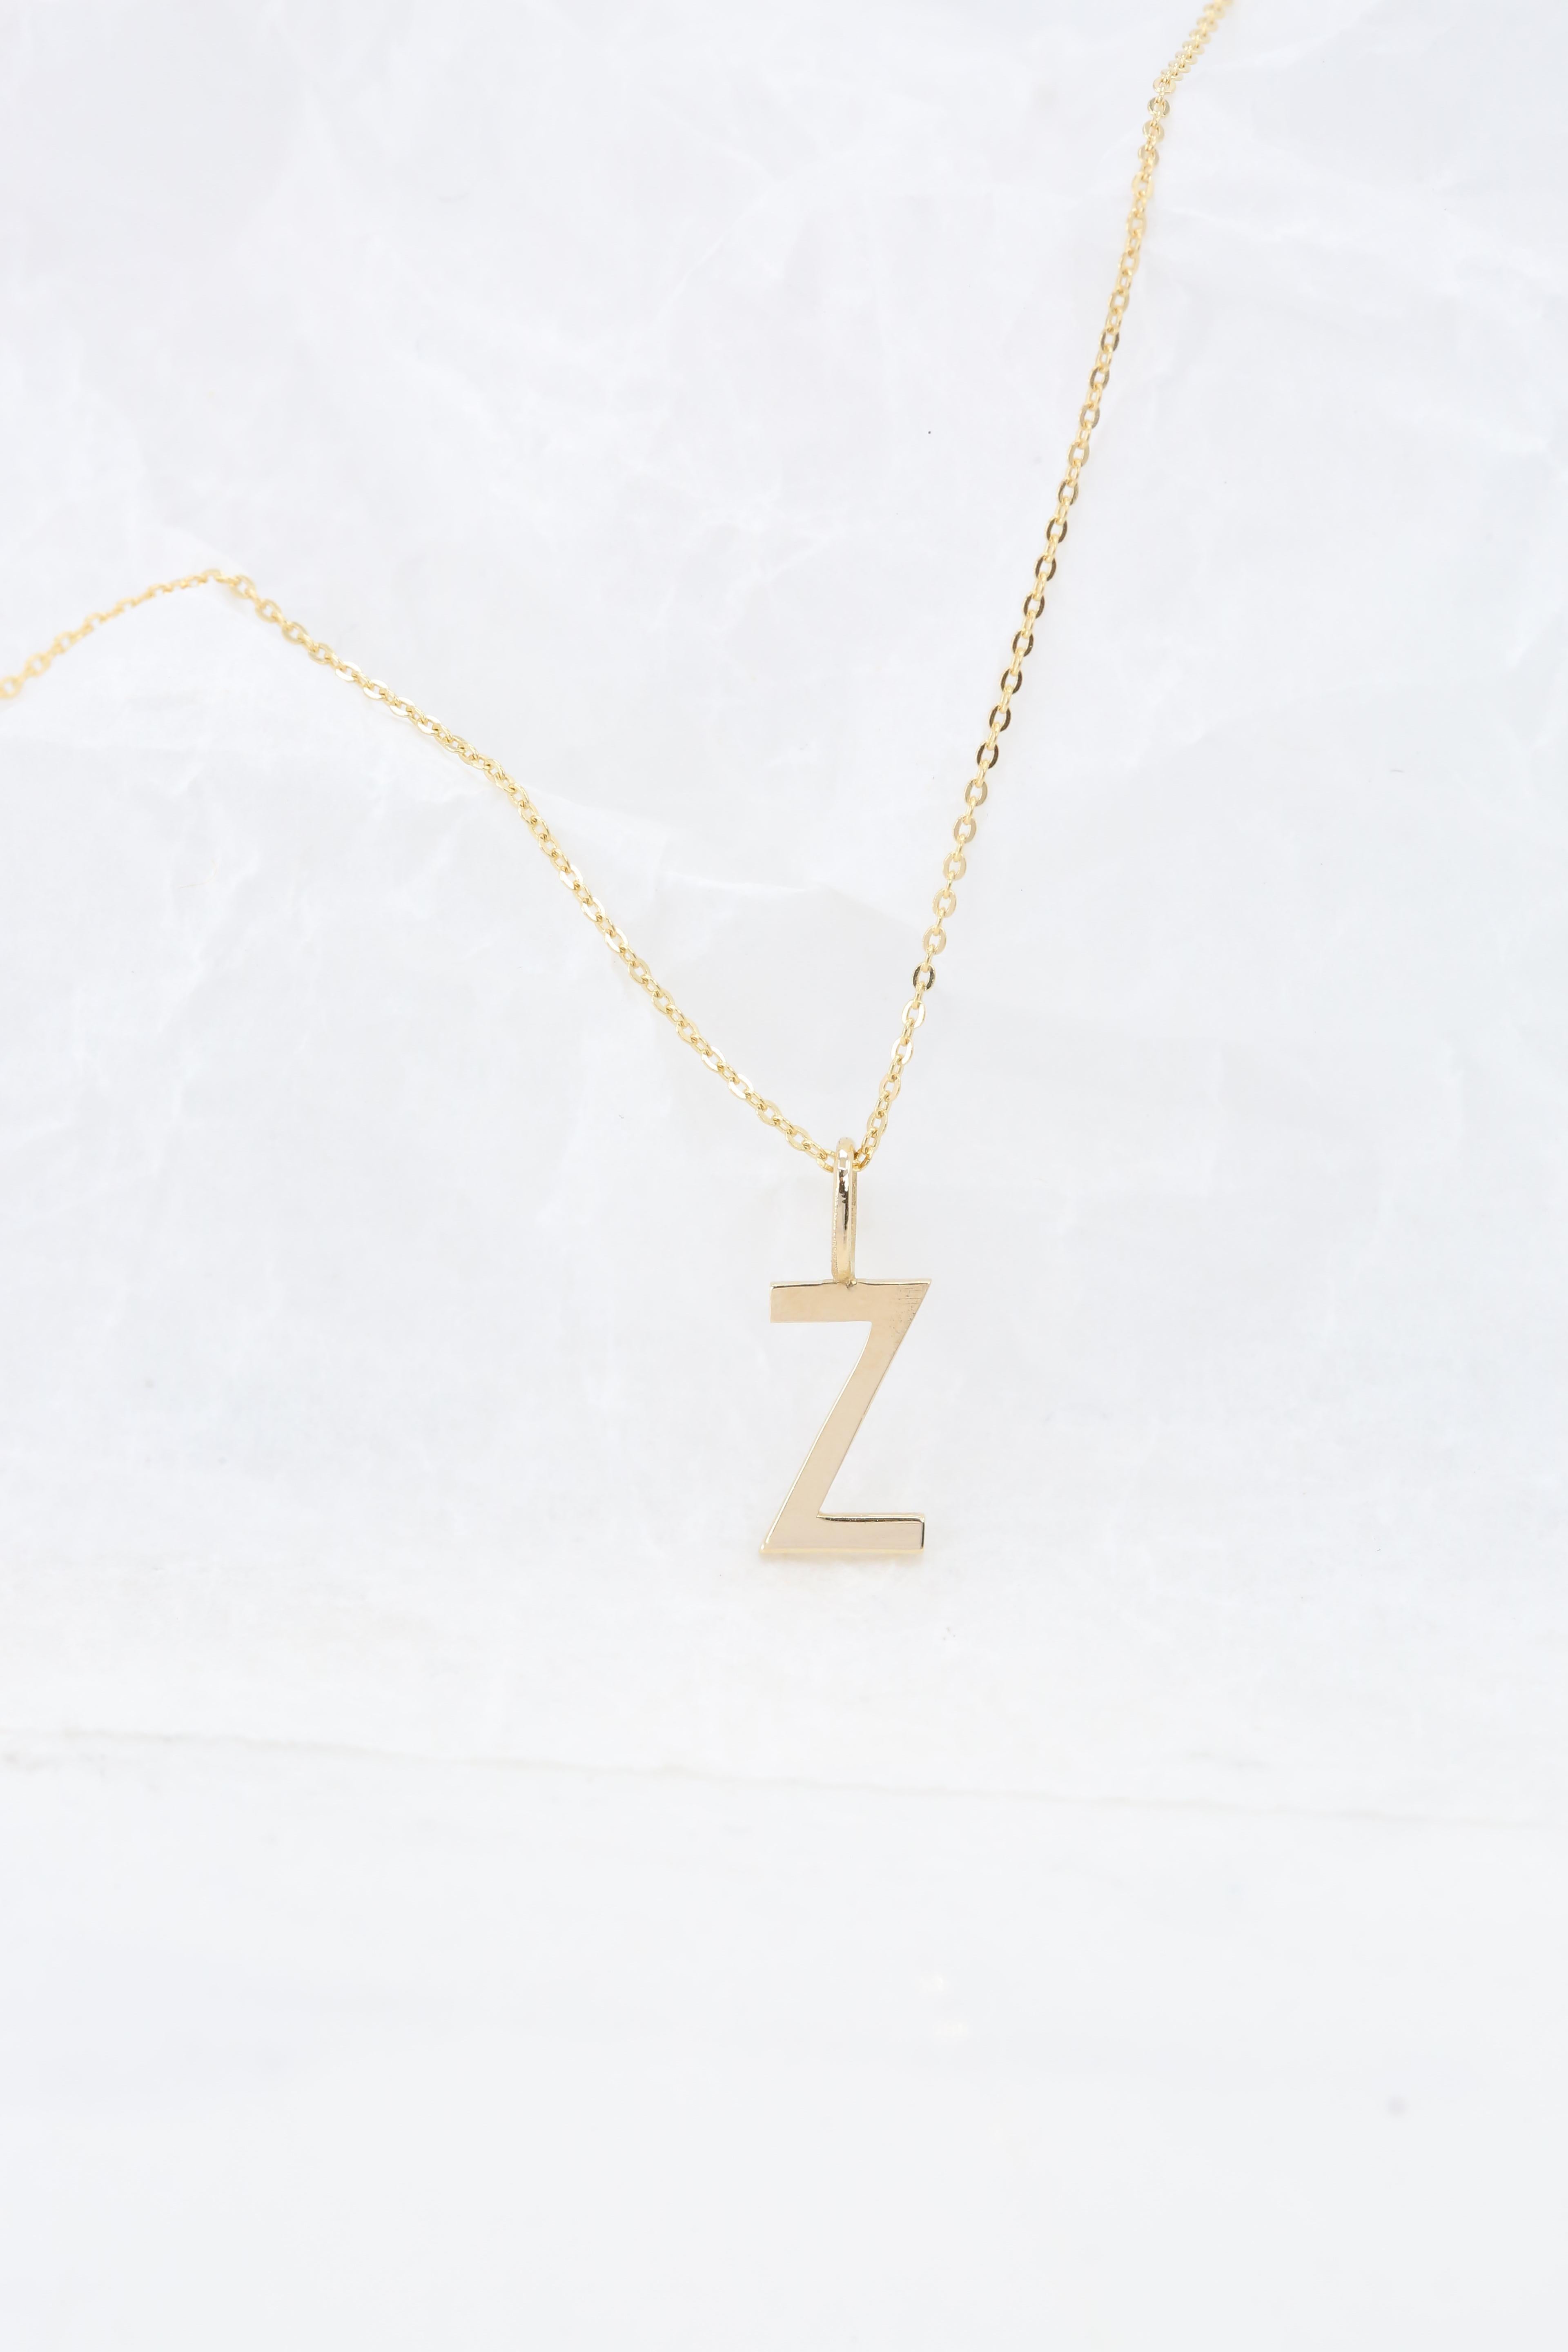 Modern 14k Gold Necklaces, Letter Necklace Models, Letter Z Gold Necklace-Gift Necklace For Sale